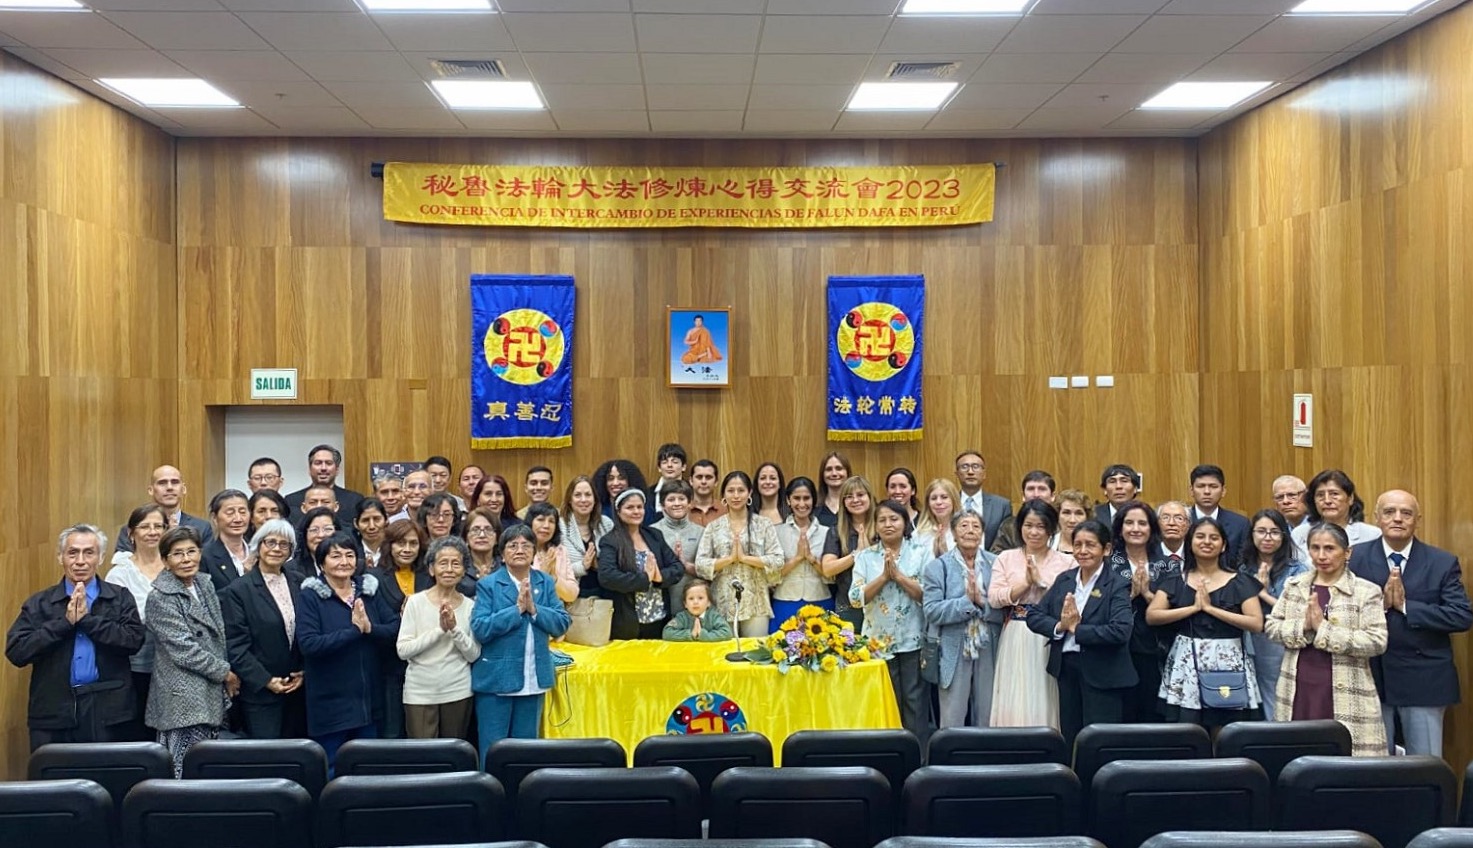 Image for article Lima, Pérou : Les pratiquants apprennent les uns des autres lors de la Conférence de partage d’expériences du Falun Dafa